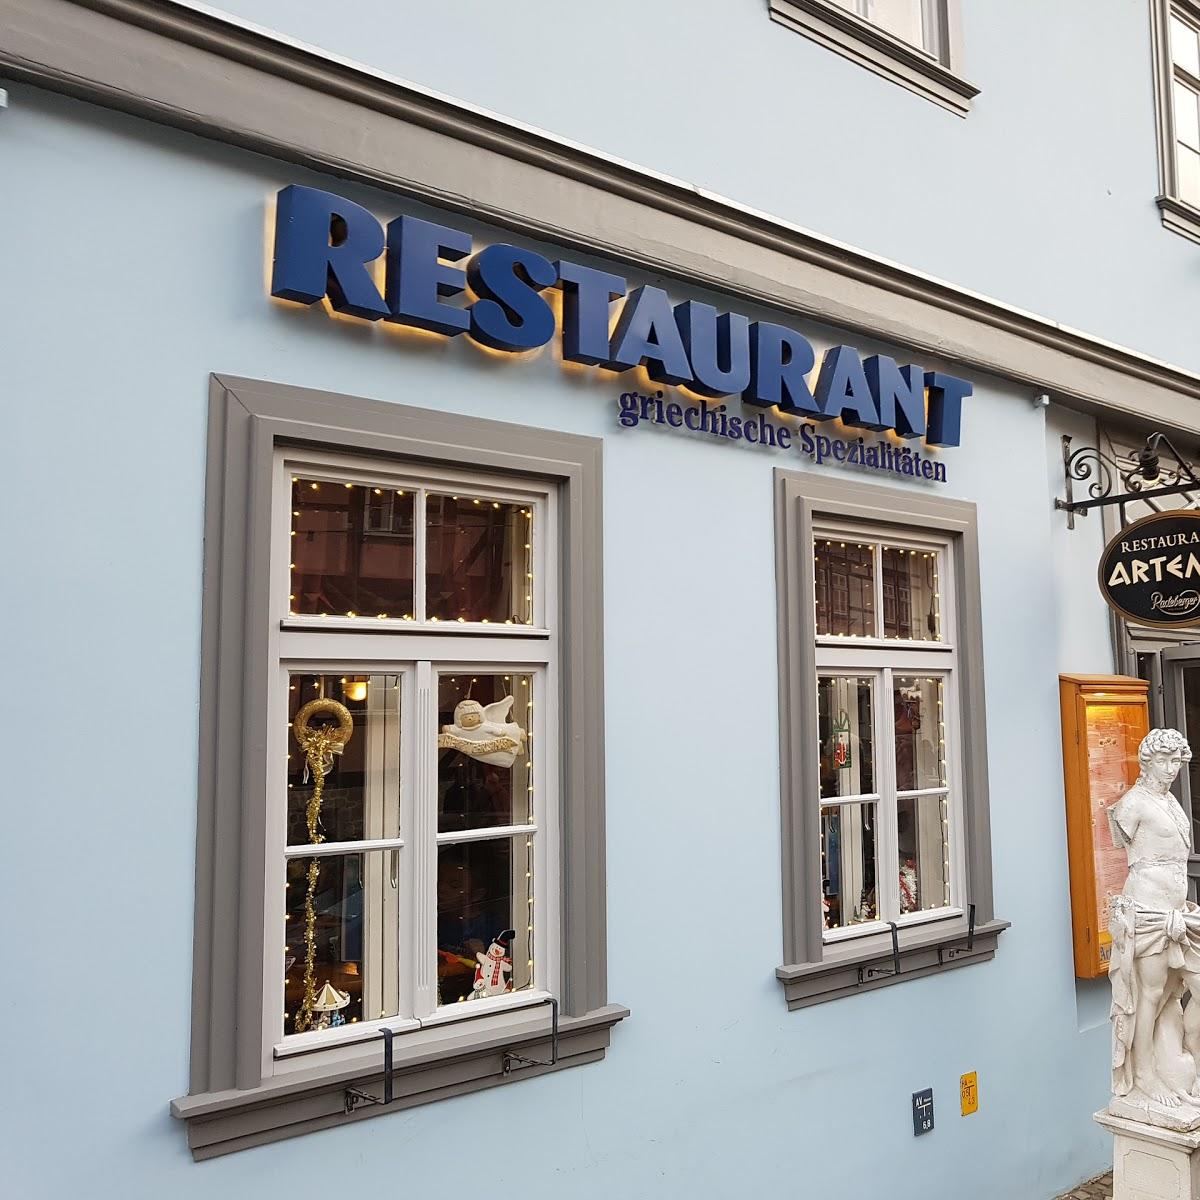 Restaurant "Helmut Friedrich Söchting Imbisswirtschaft" in  Halberstadt